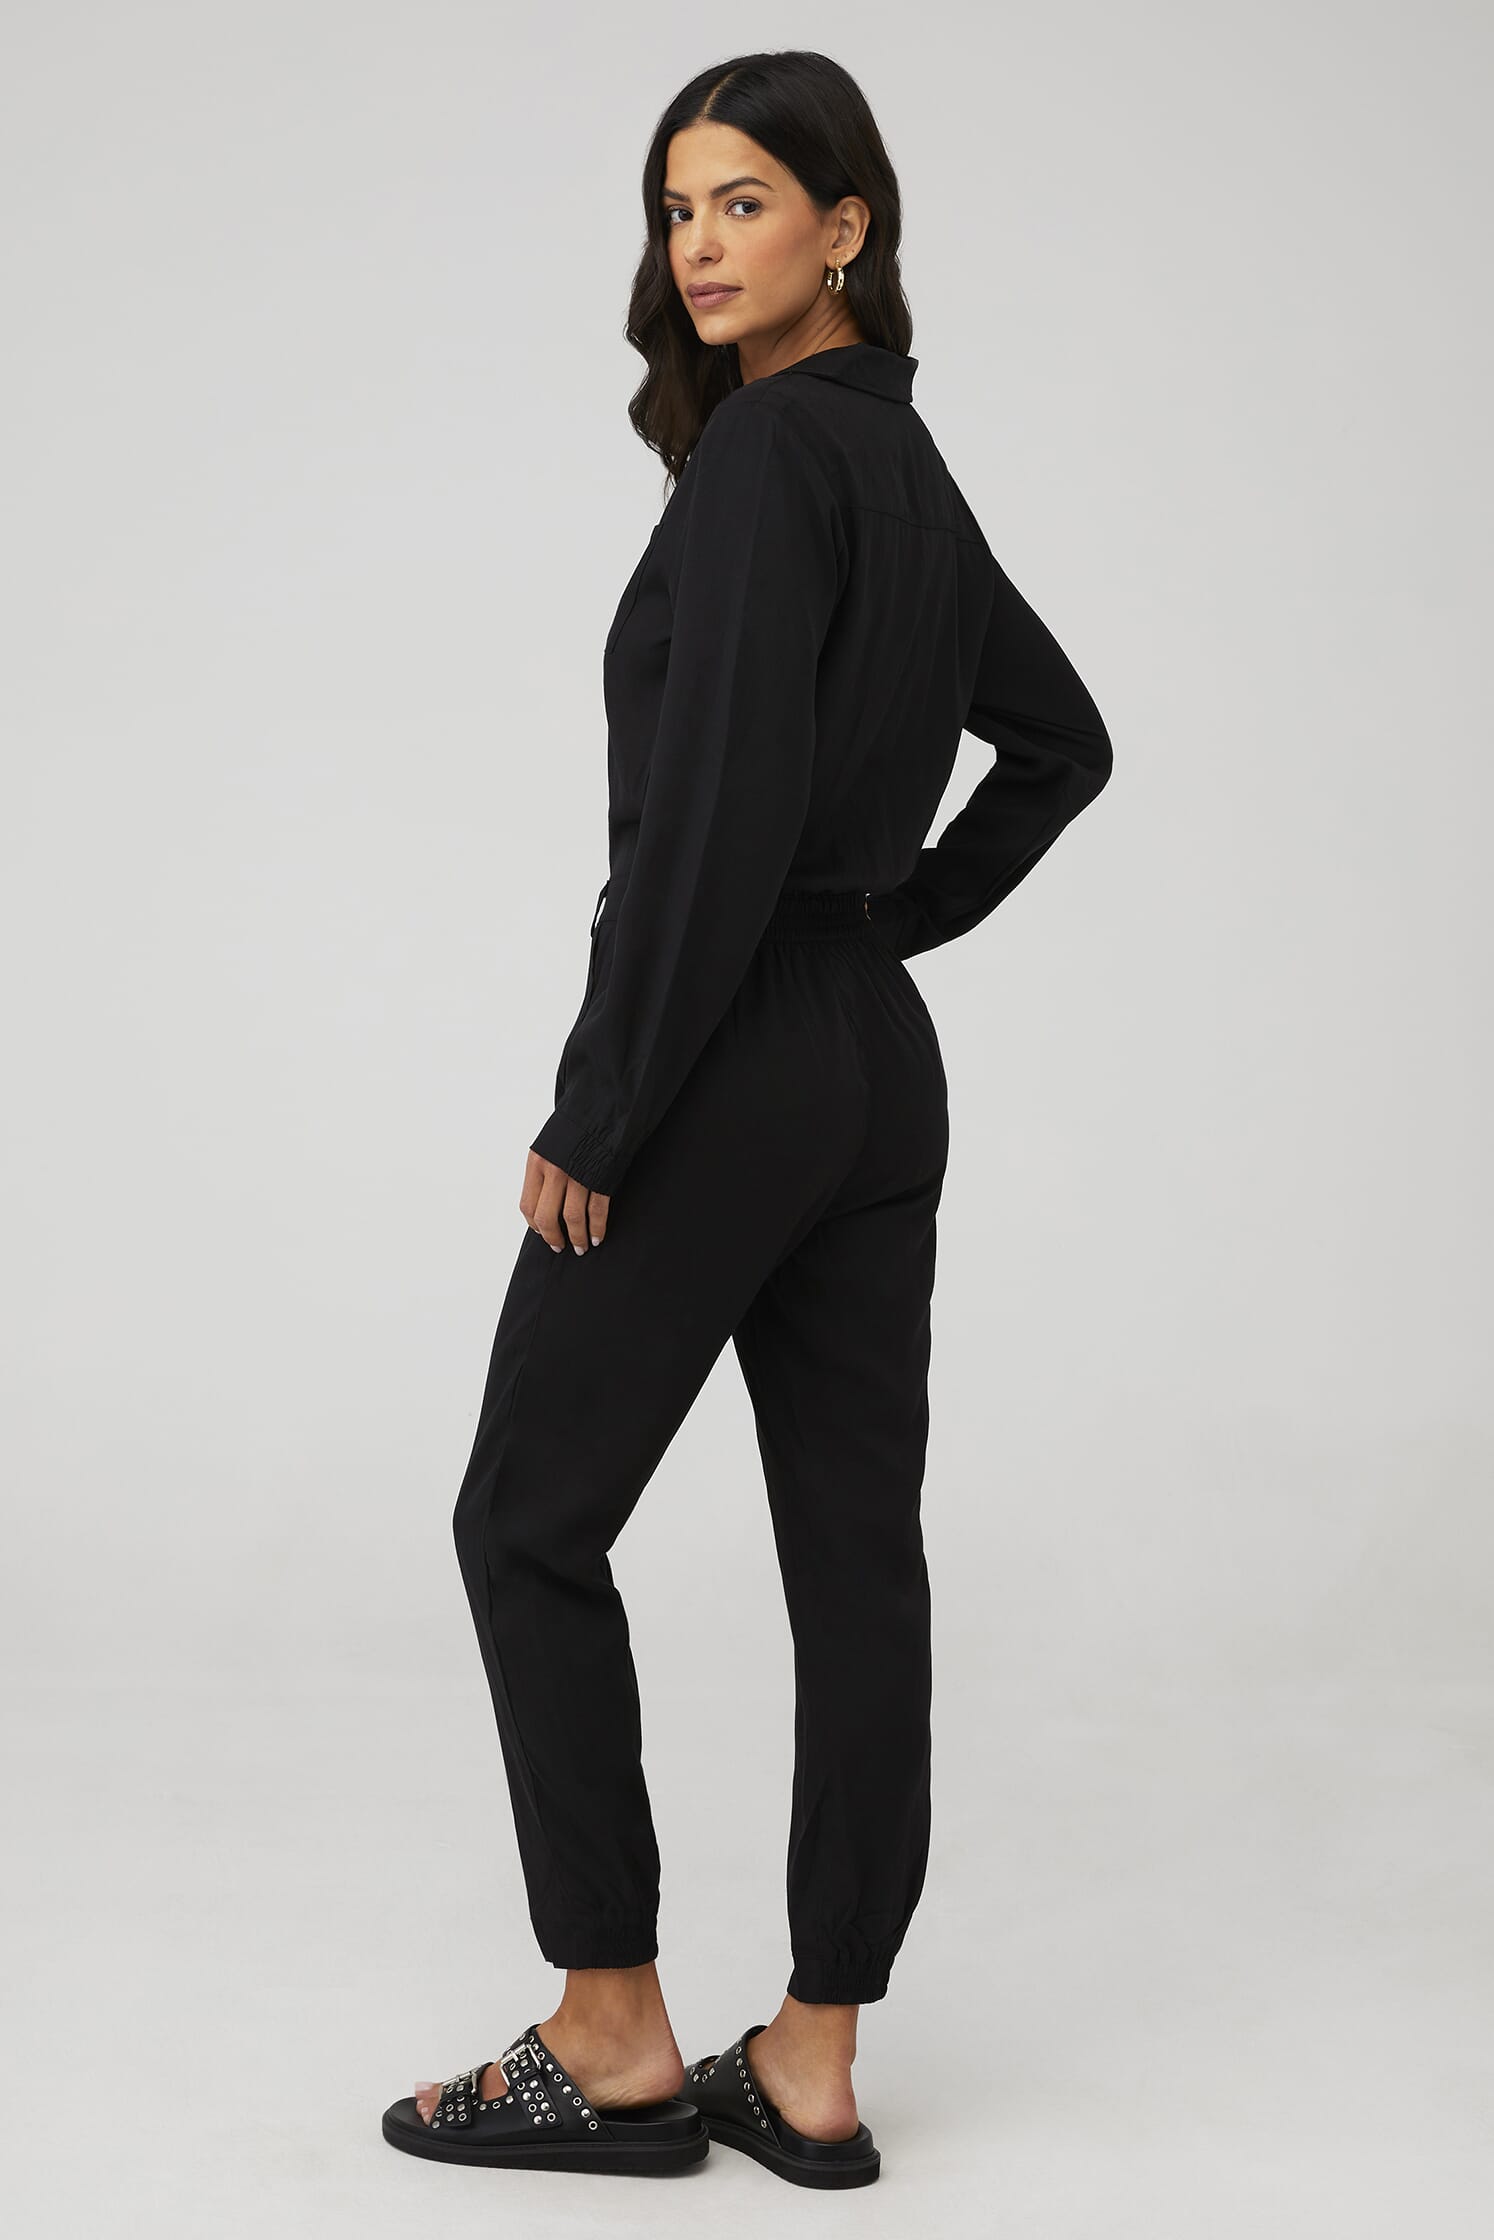 LBLC THE LABEL | Juliette Jumpsuit in Black| FashionPass